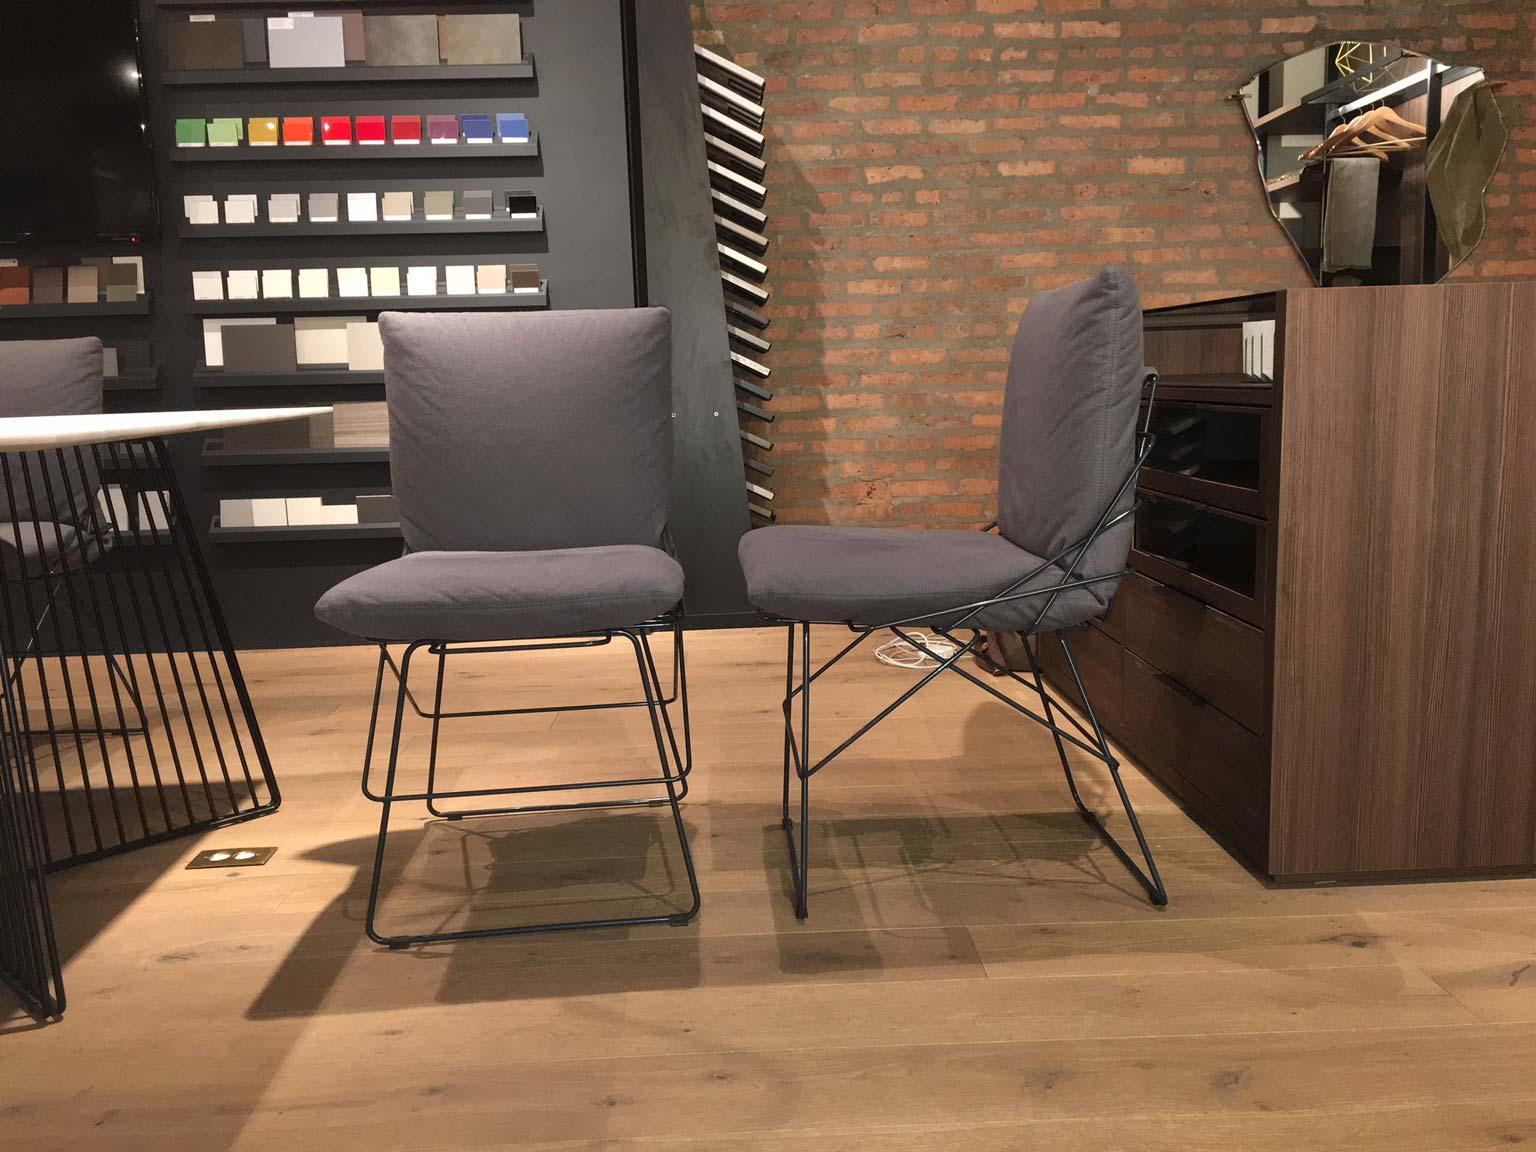 Dieser Sof Sof Stuhl hat harmonische Linien, die die wesentliche Eleganz des Designs von Enzo Mari vermitteln. Die 1972 von Driade hergestellte und 2015 neu gestaltete Sof Sof ist eine zeitlose Ikone. Die Struktur ist fast eine Skulptur, die aus